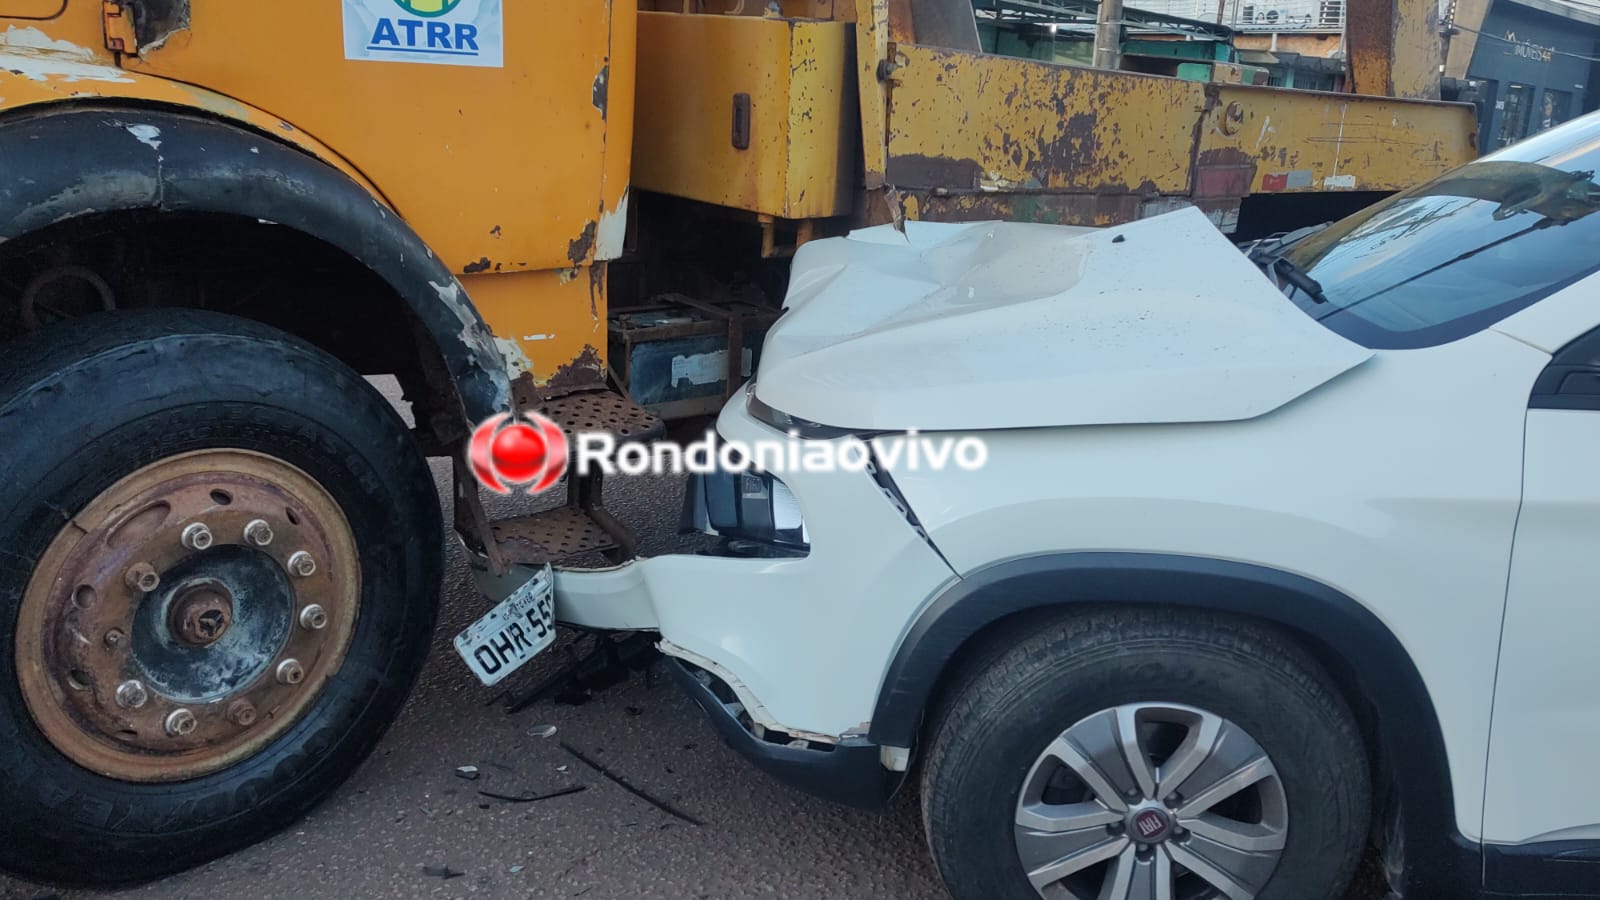 URGENTE: Fiat Toro fica destruída em batida contra caminhão